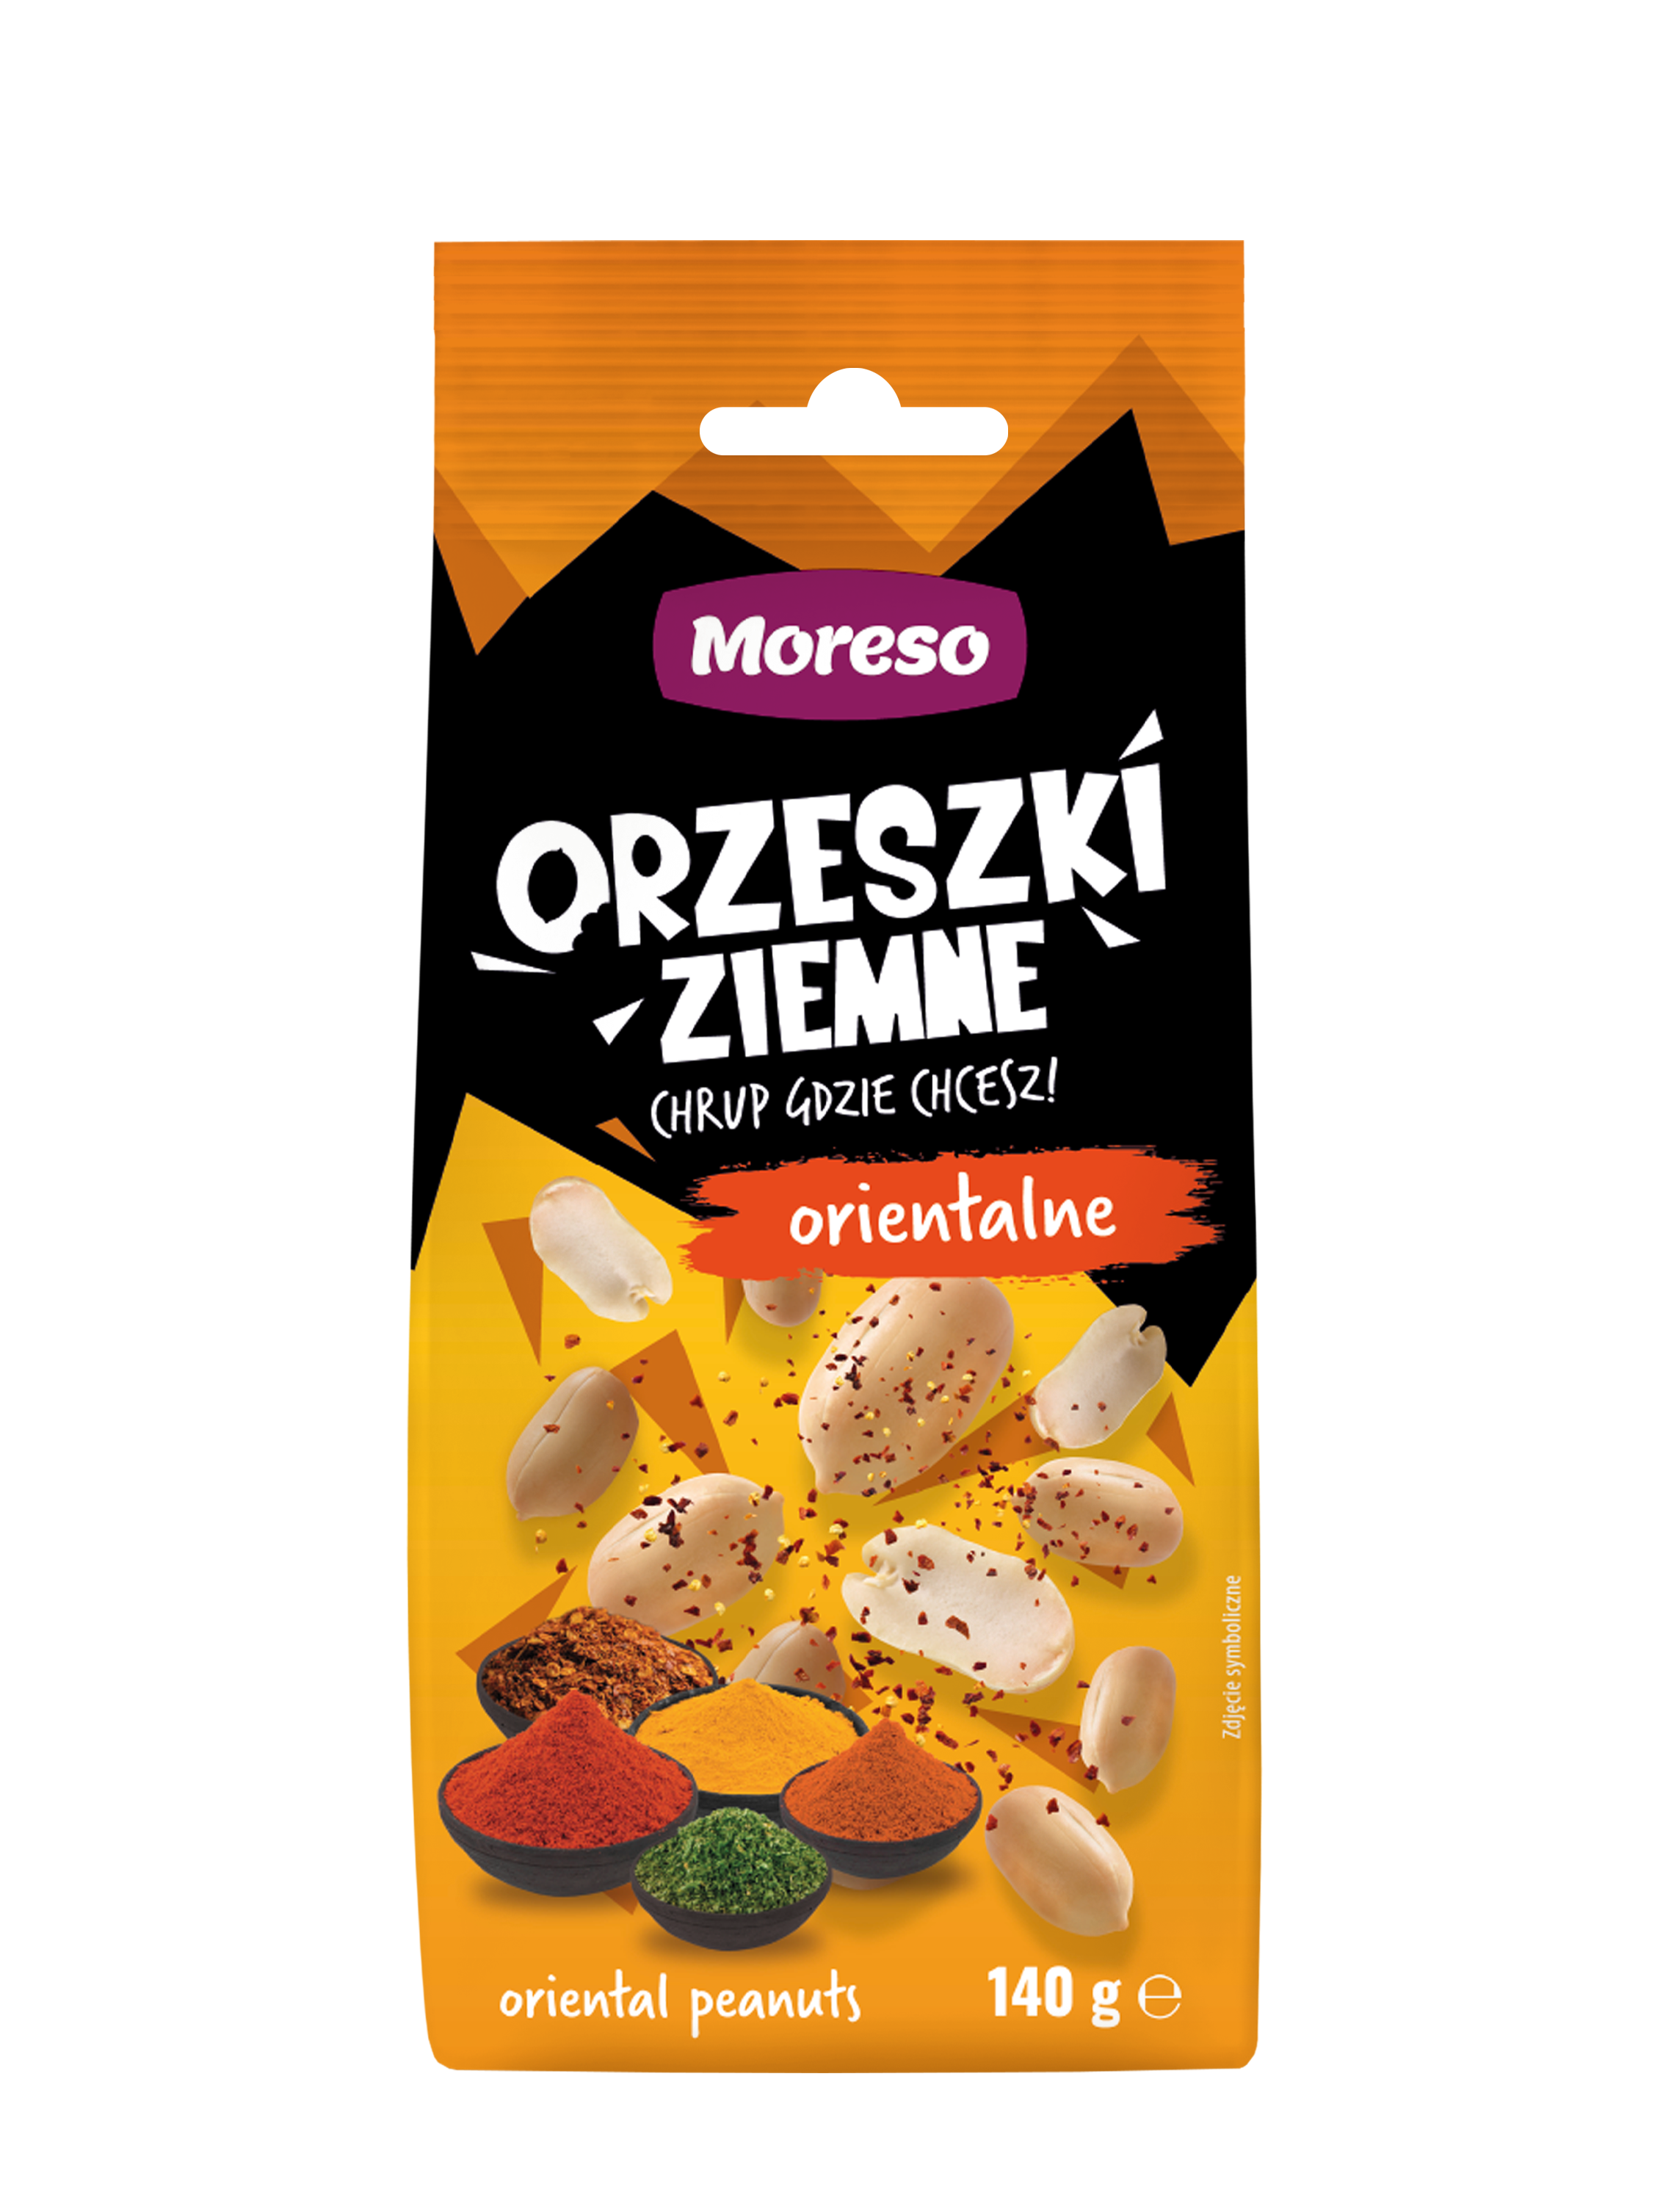 Zobacz ORZESZKI ZIEMNE ORIENTALNE 140g na Moreso.pl!